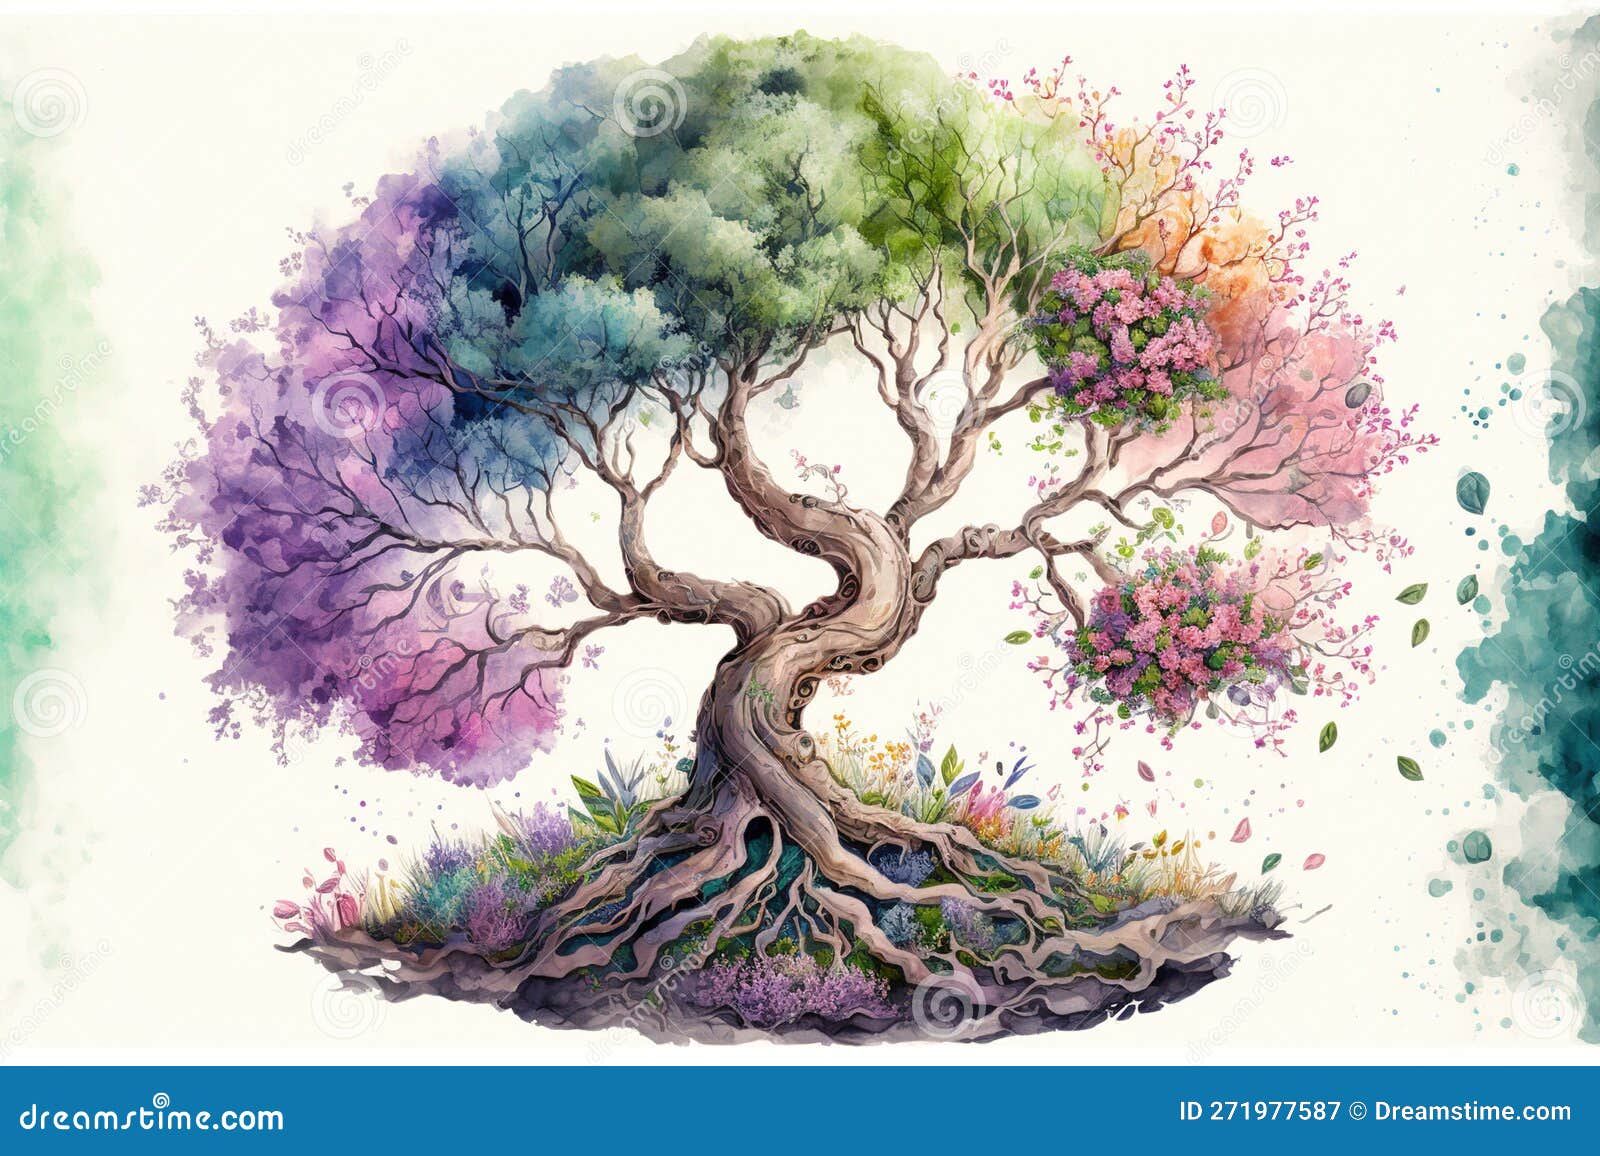 El árbol De La Vida En El Colorido Estilo De Pintura De Acuarela Primaveral  Stock de ilustración - Ilustración de wallpaper, chapoteo: 271977587